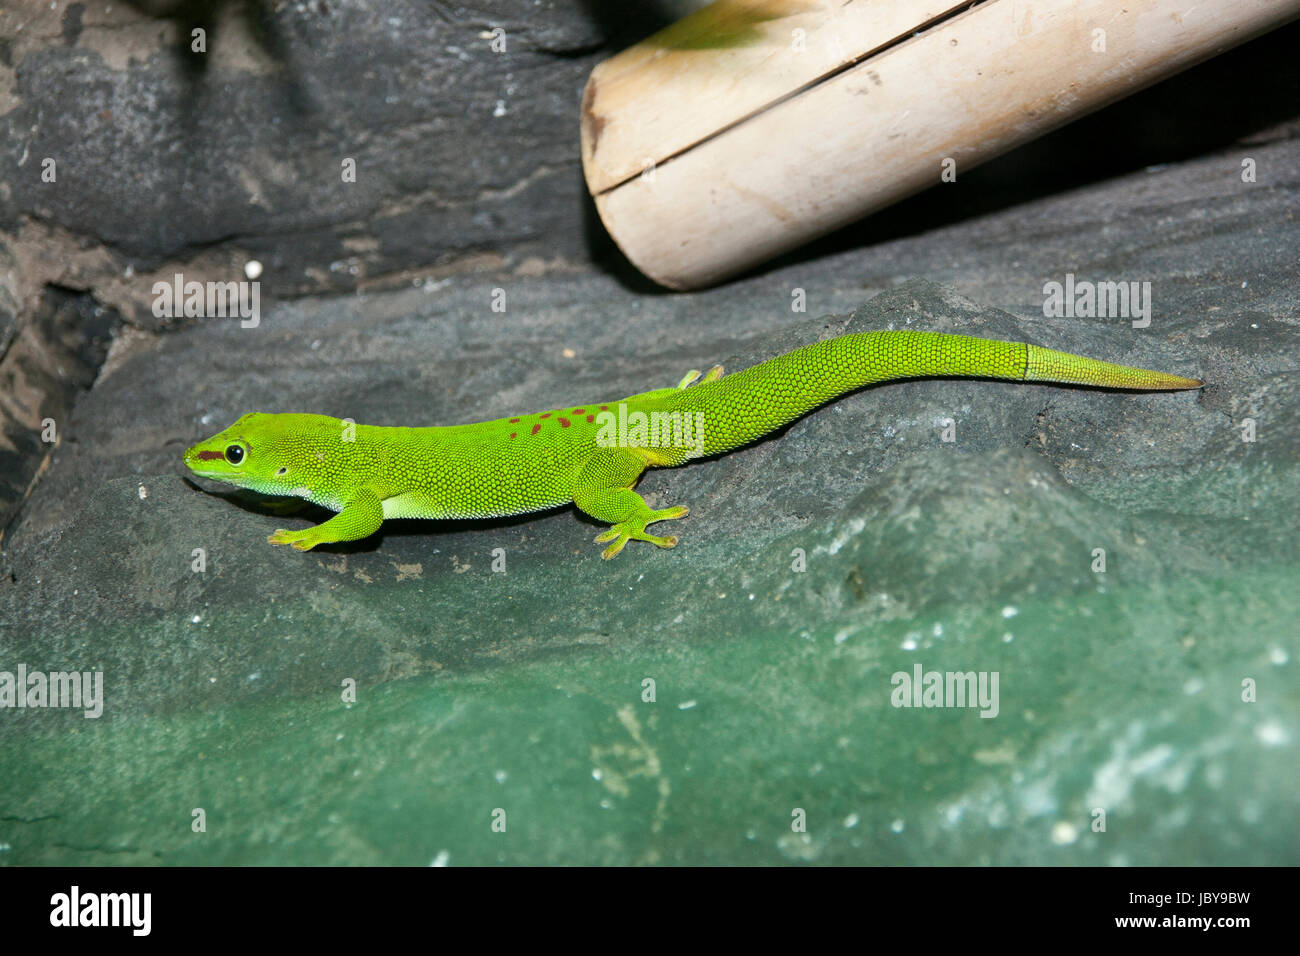 Verde limón brillante Madagascar day gecko con banda marrón en la cabeza y manchas en el cuerpo y el nuevo crecimiento de la parte trasera. Foto de stock